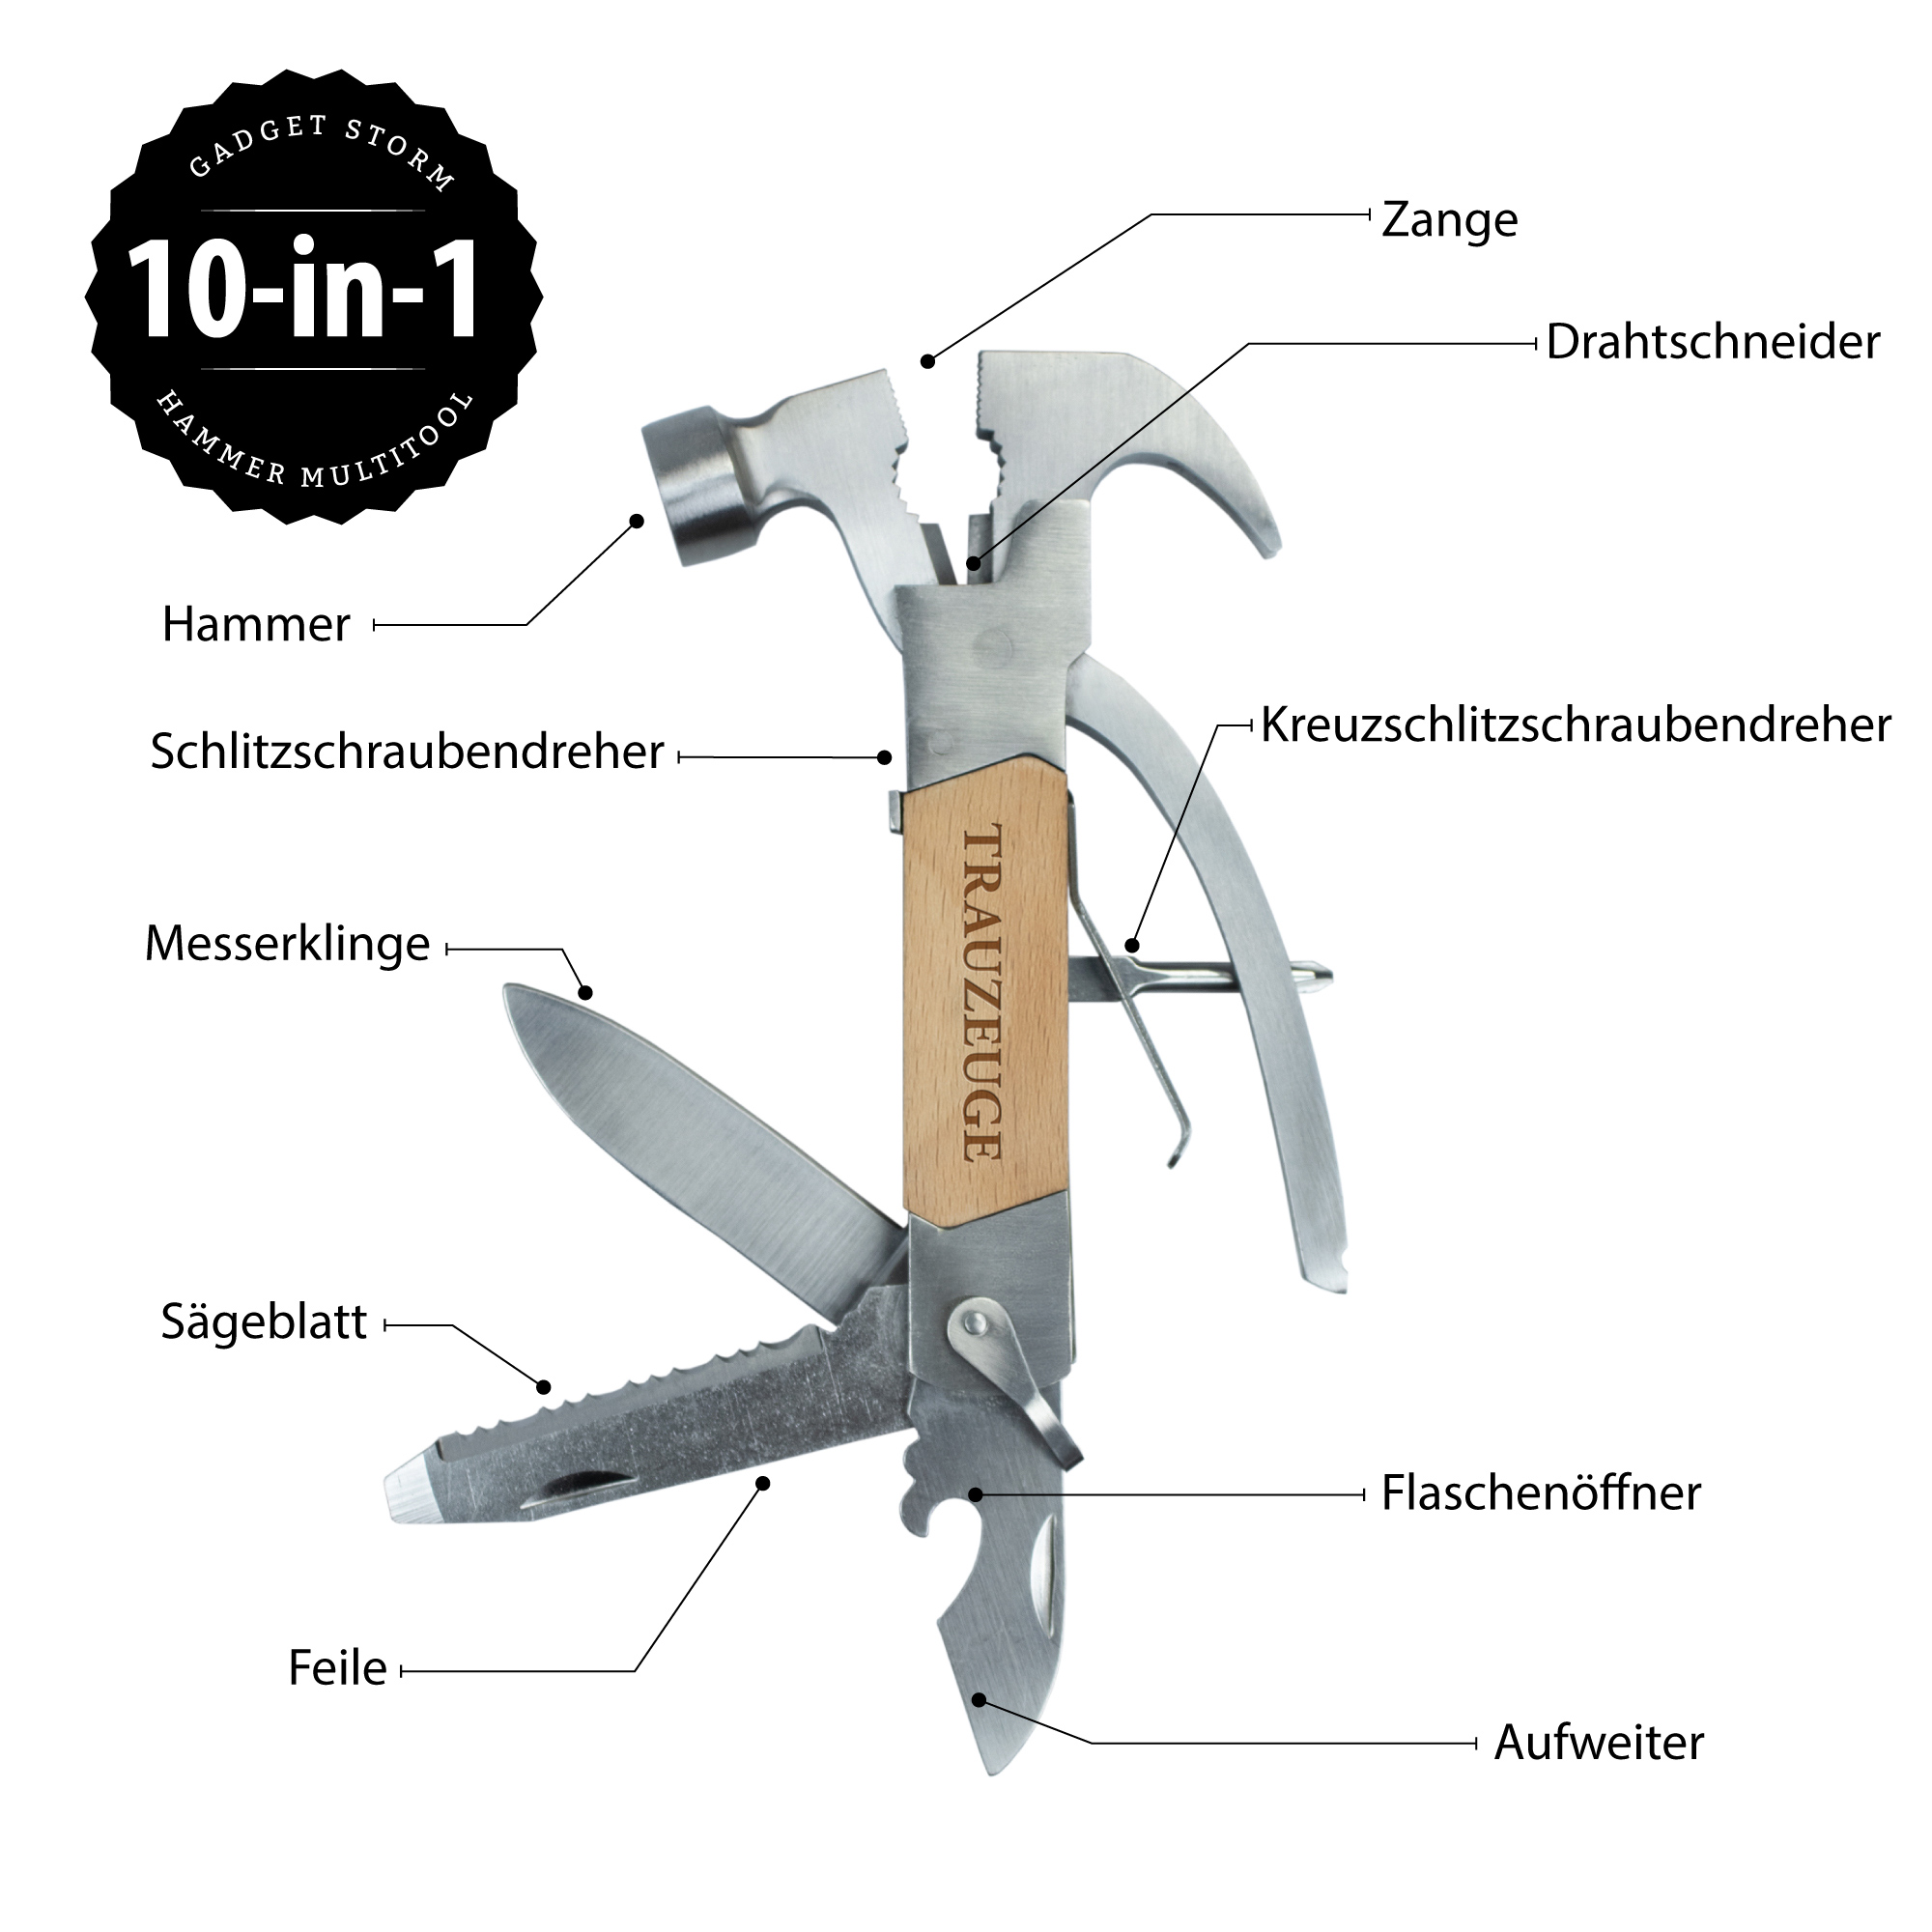 Graviertes Werkzeug mit 10 Funktionen, 10in1 Multi Tool für den Trauzeugen, Holzhammer Multifunktionswerkzeug mit "Trauzeuge" Gravur